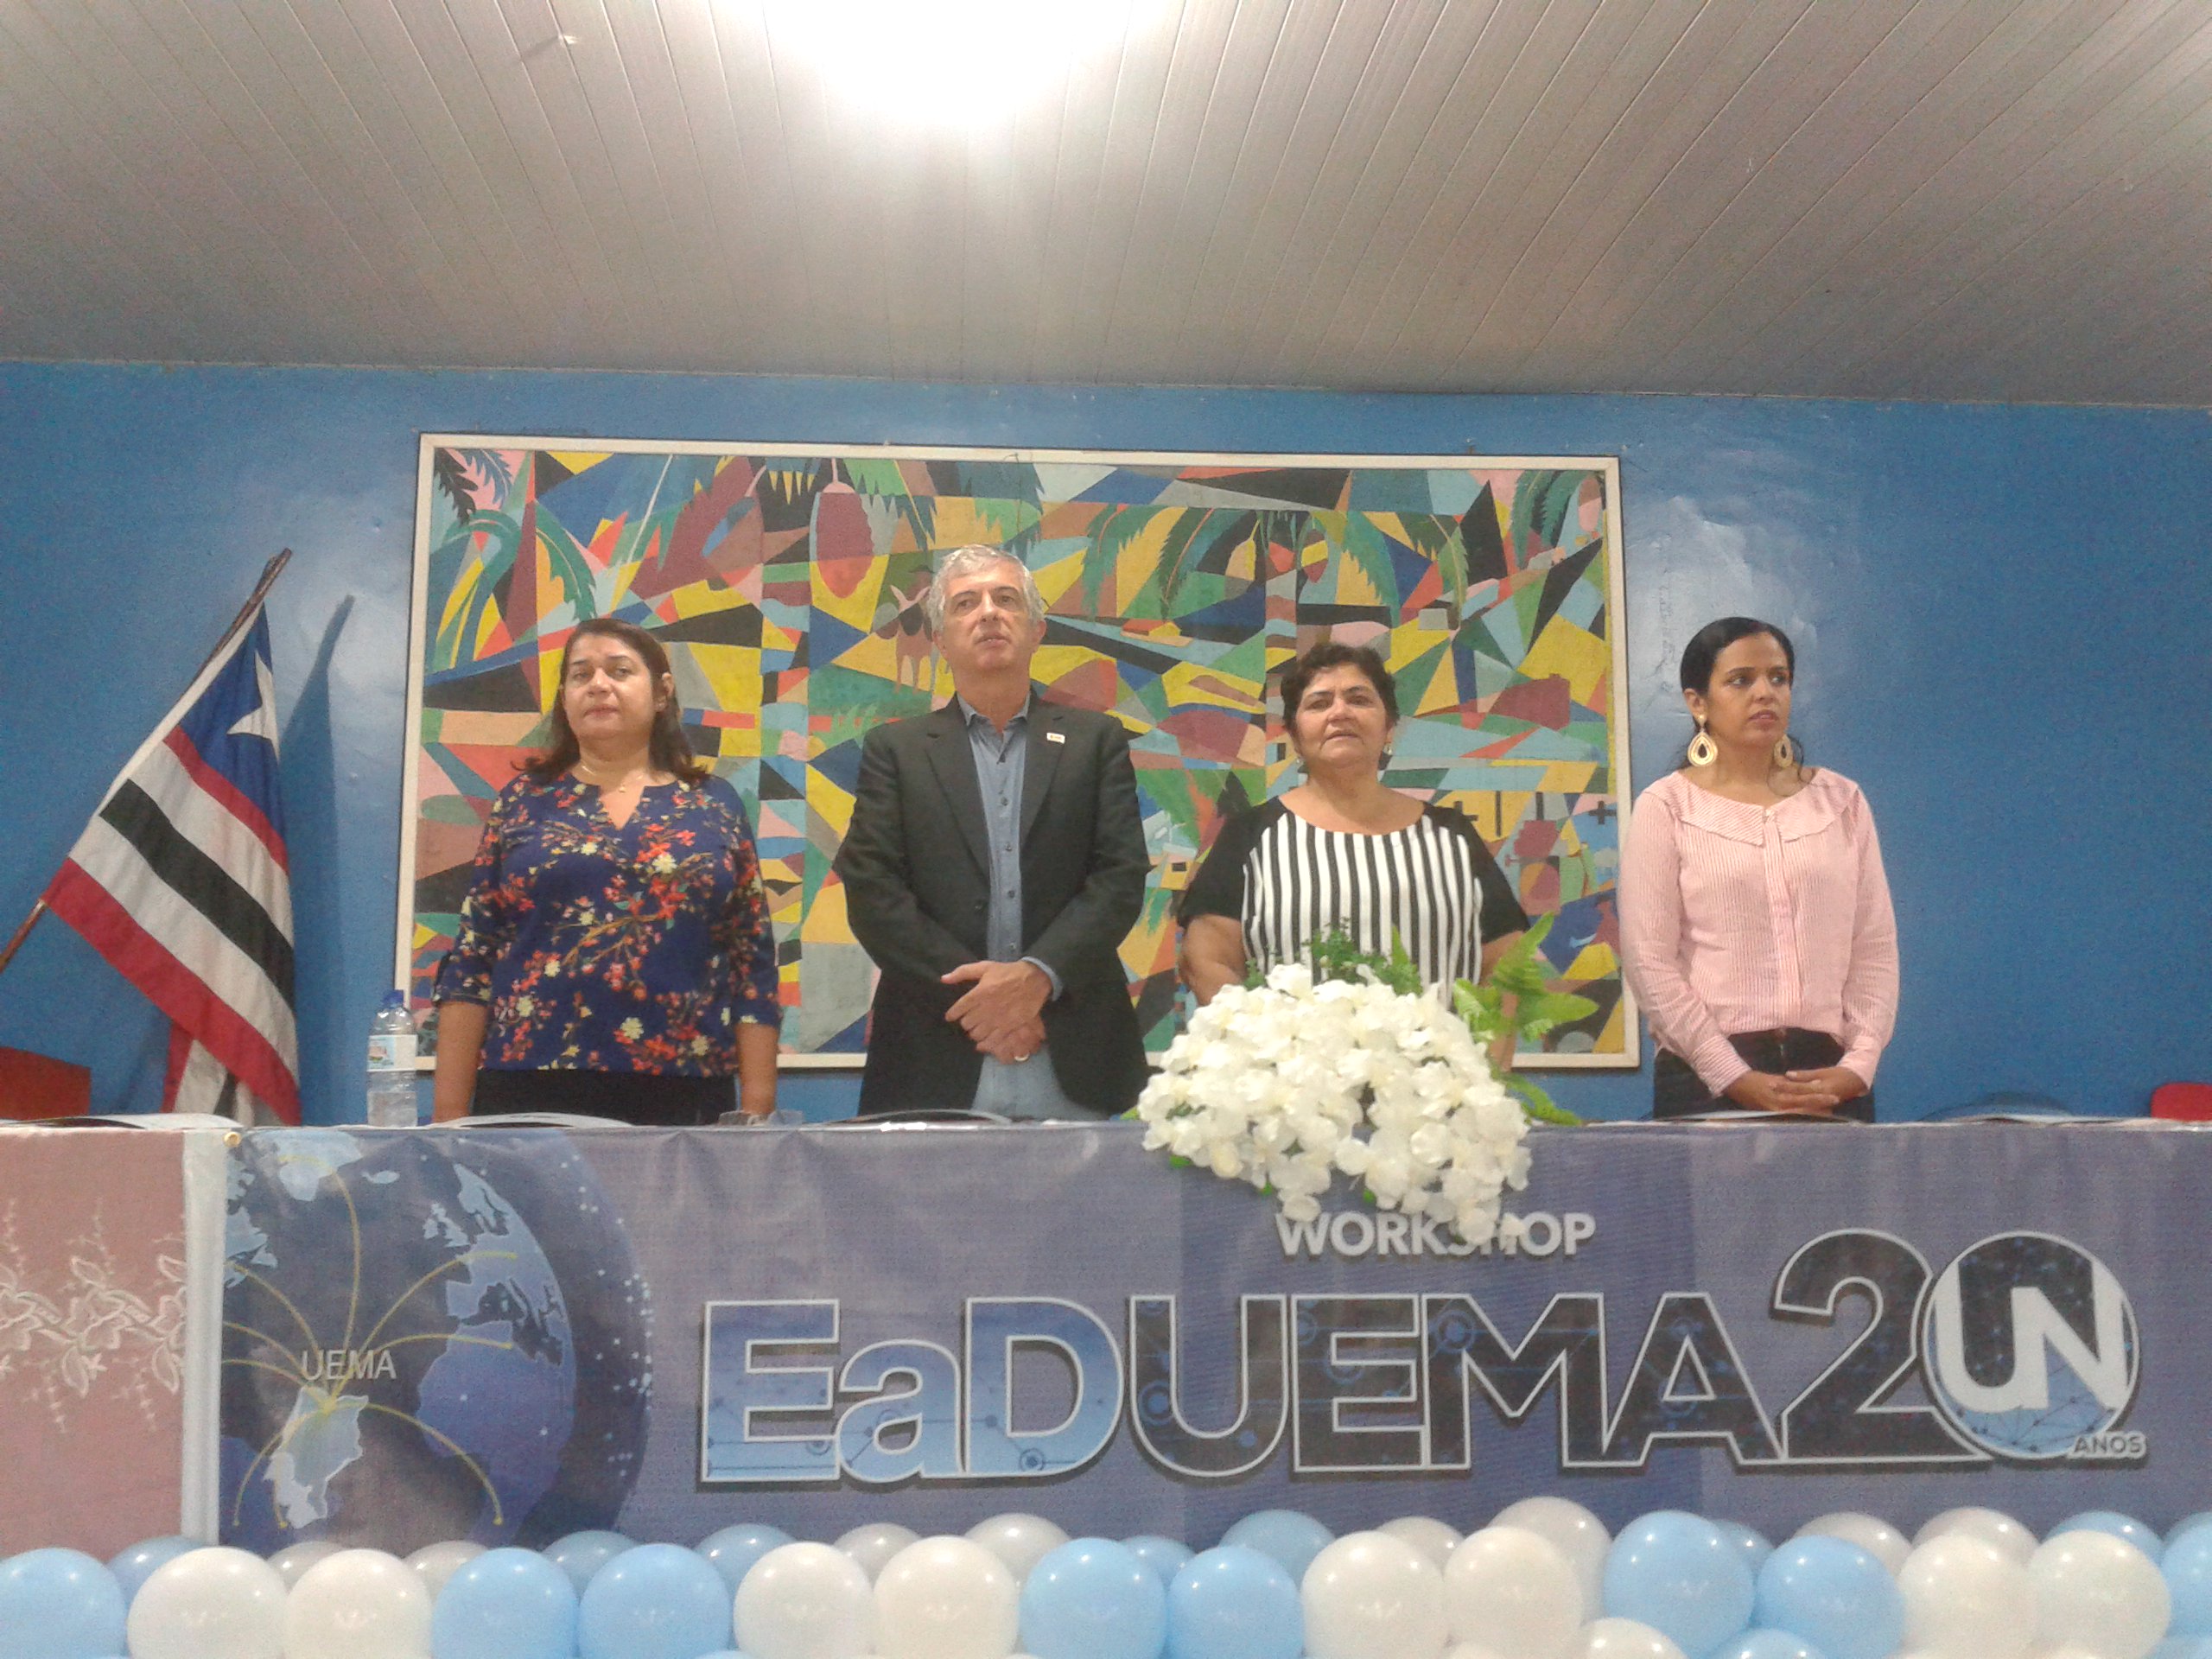 Campus de Caxias realiza workshop em comemoração aos 20 anos de EaD/UEMA